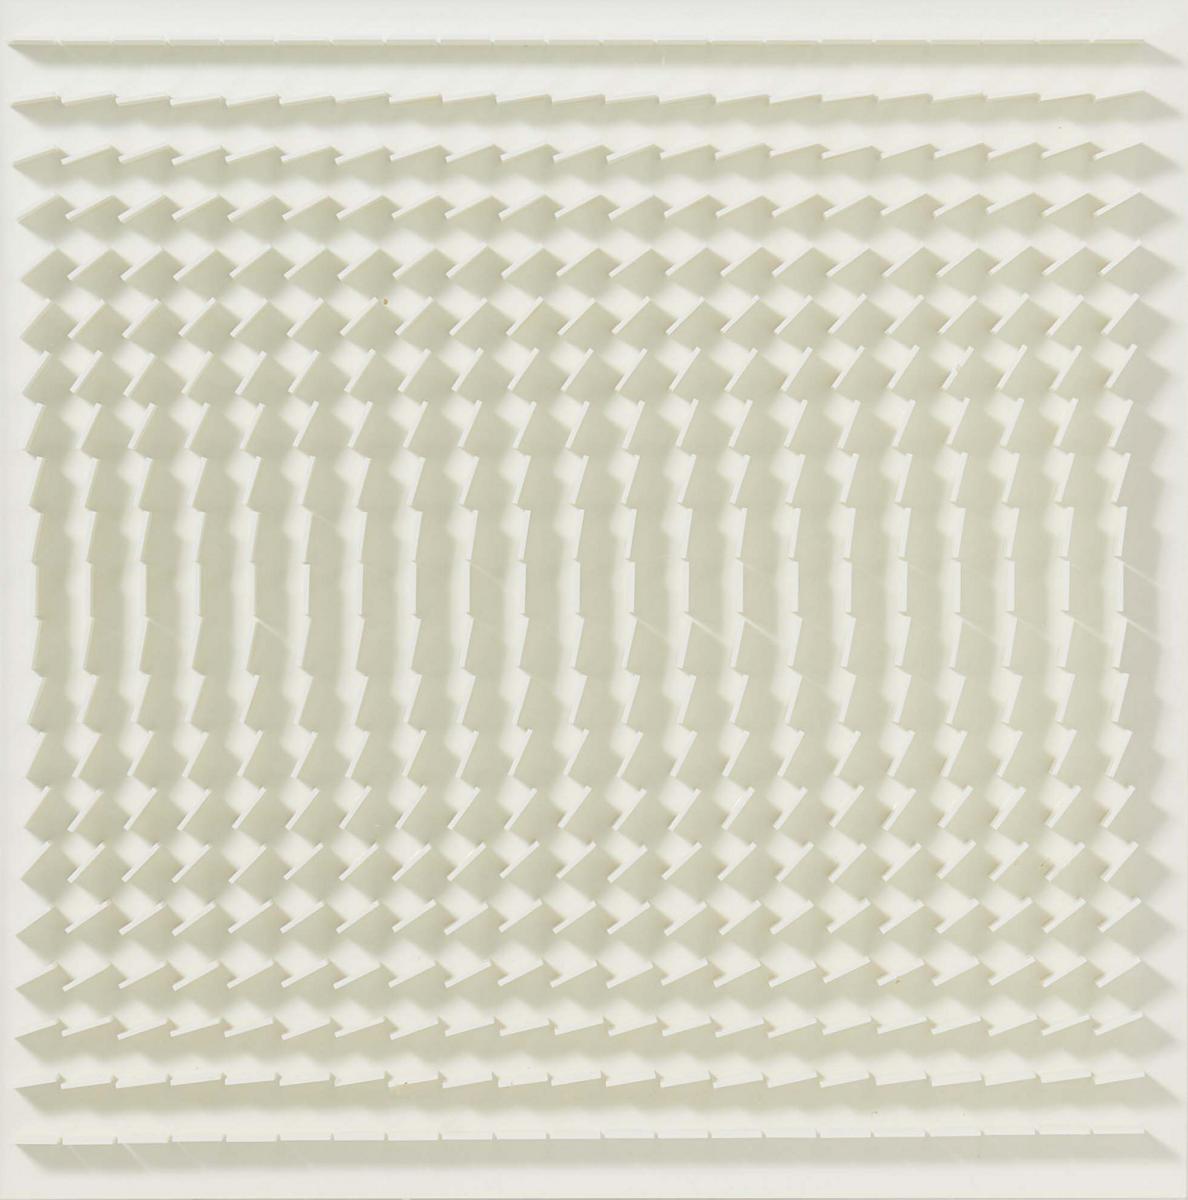 Hartmut Boehm - Quadratrelief 113 Aus Visuell veraenderliche Struktur, 65467-2, Van Ham Kunstauktionen